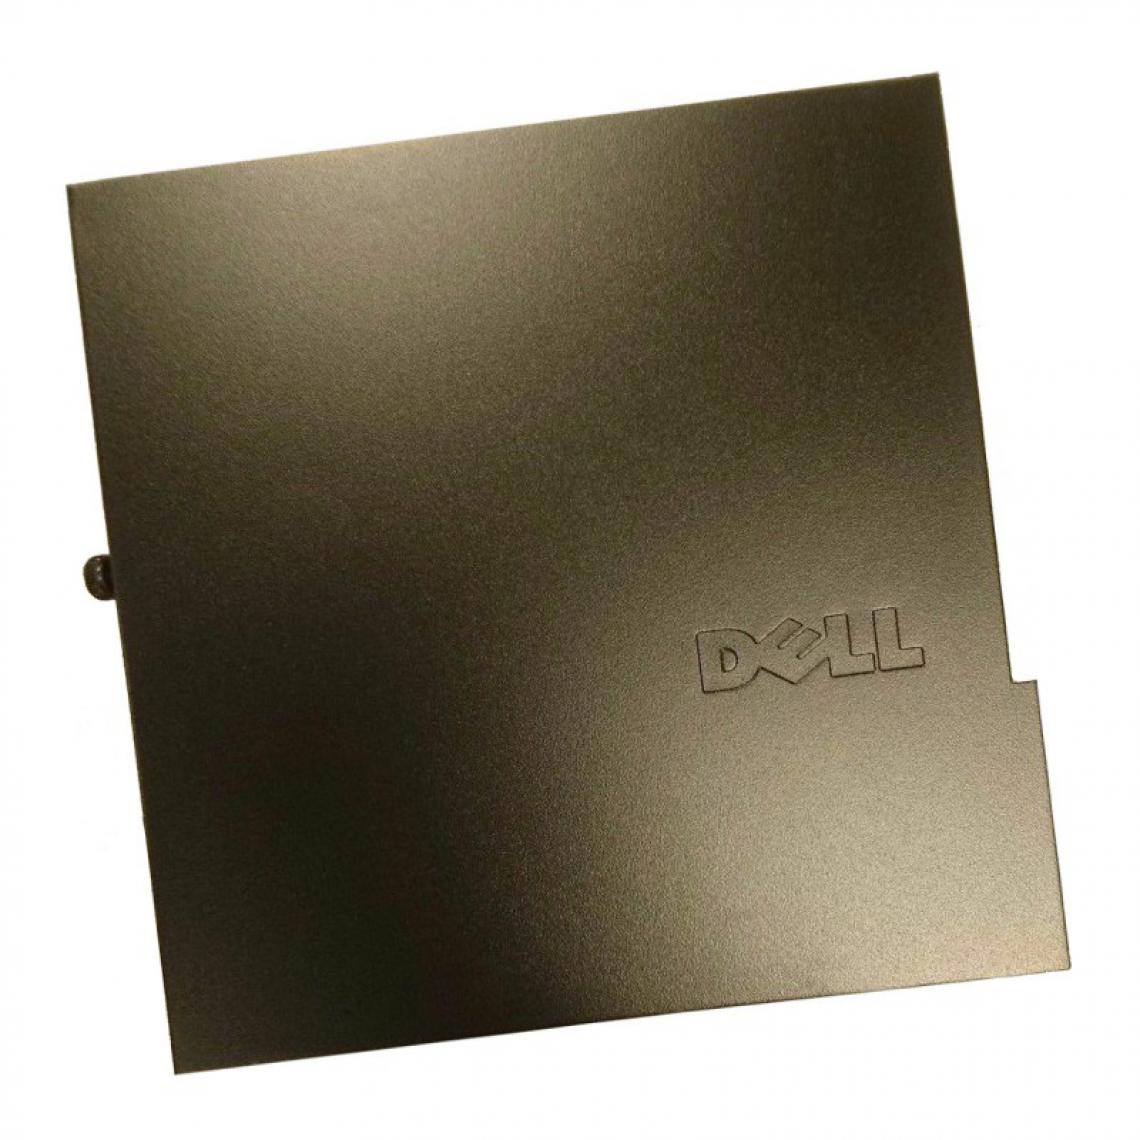 Dell - Capot PC Dell OptiPlex 780 790 990 7010 9020 USFF K555T J421T 1B23TGG00 - Boitier PC